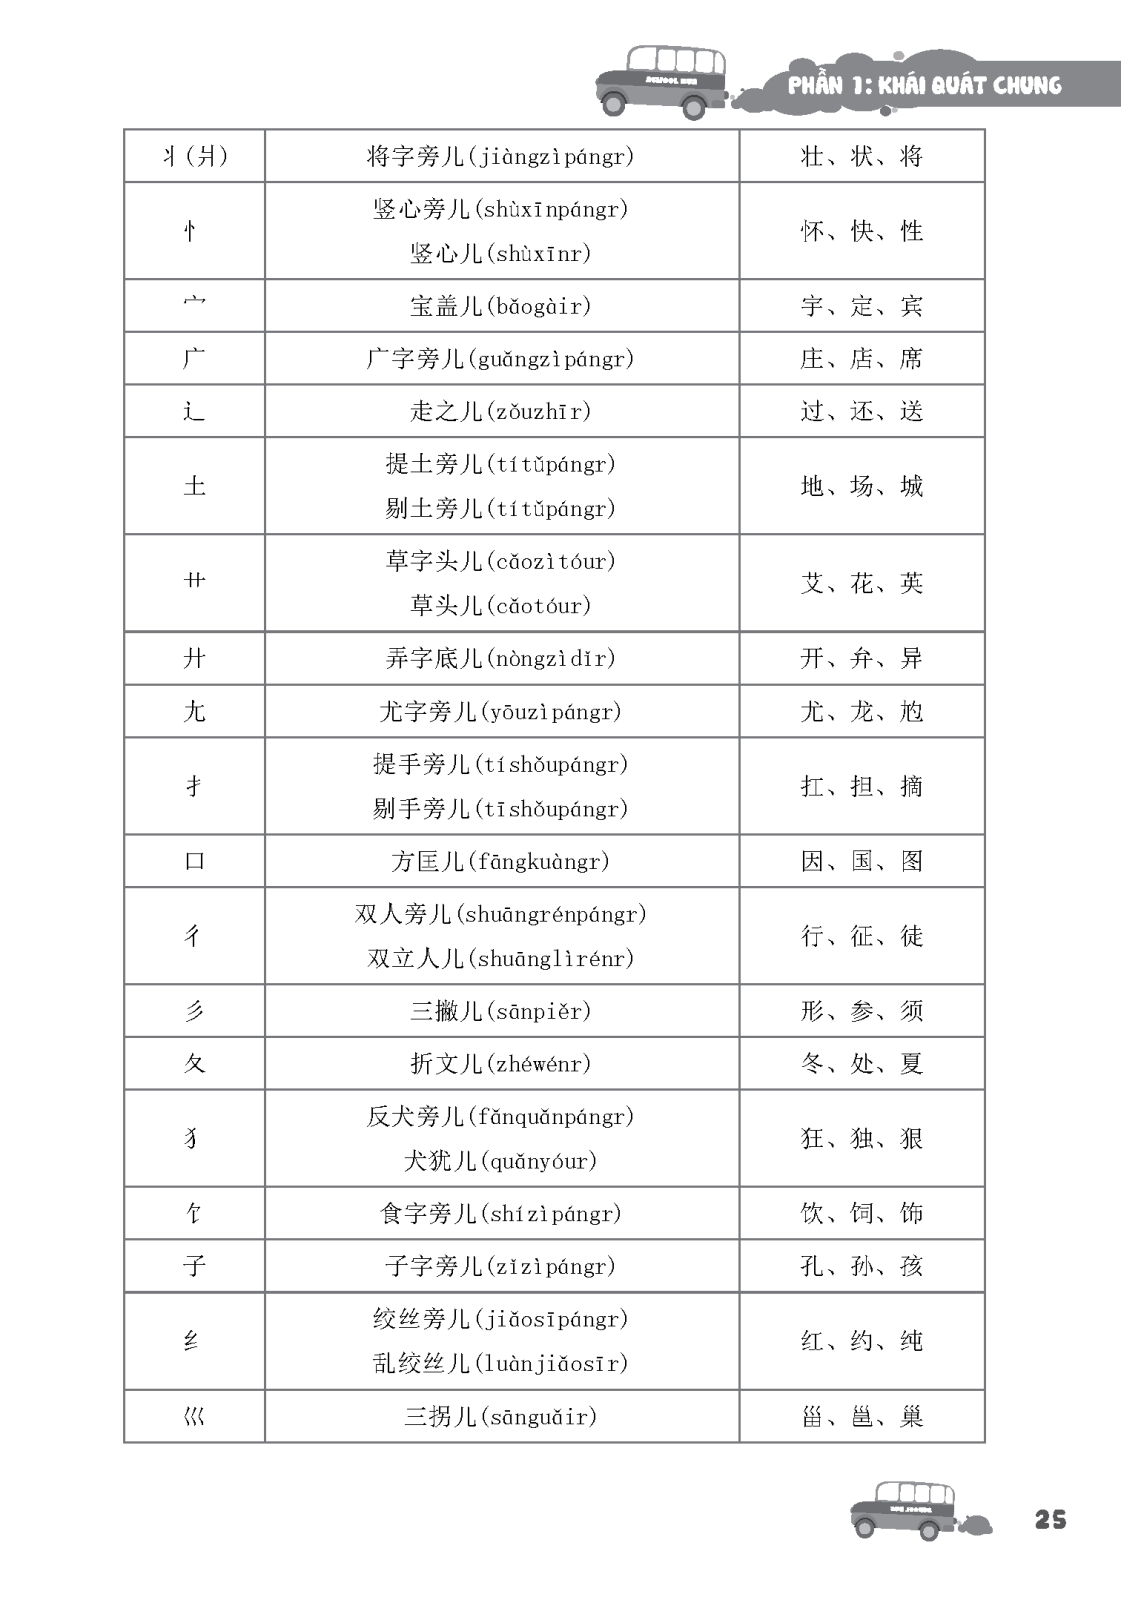 Tập Viết Chữ Hán Cơ Bản Dành Cho Người Mới Bắt Đầu PDF